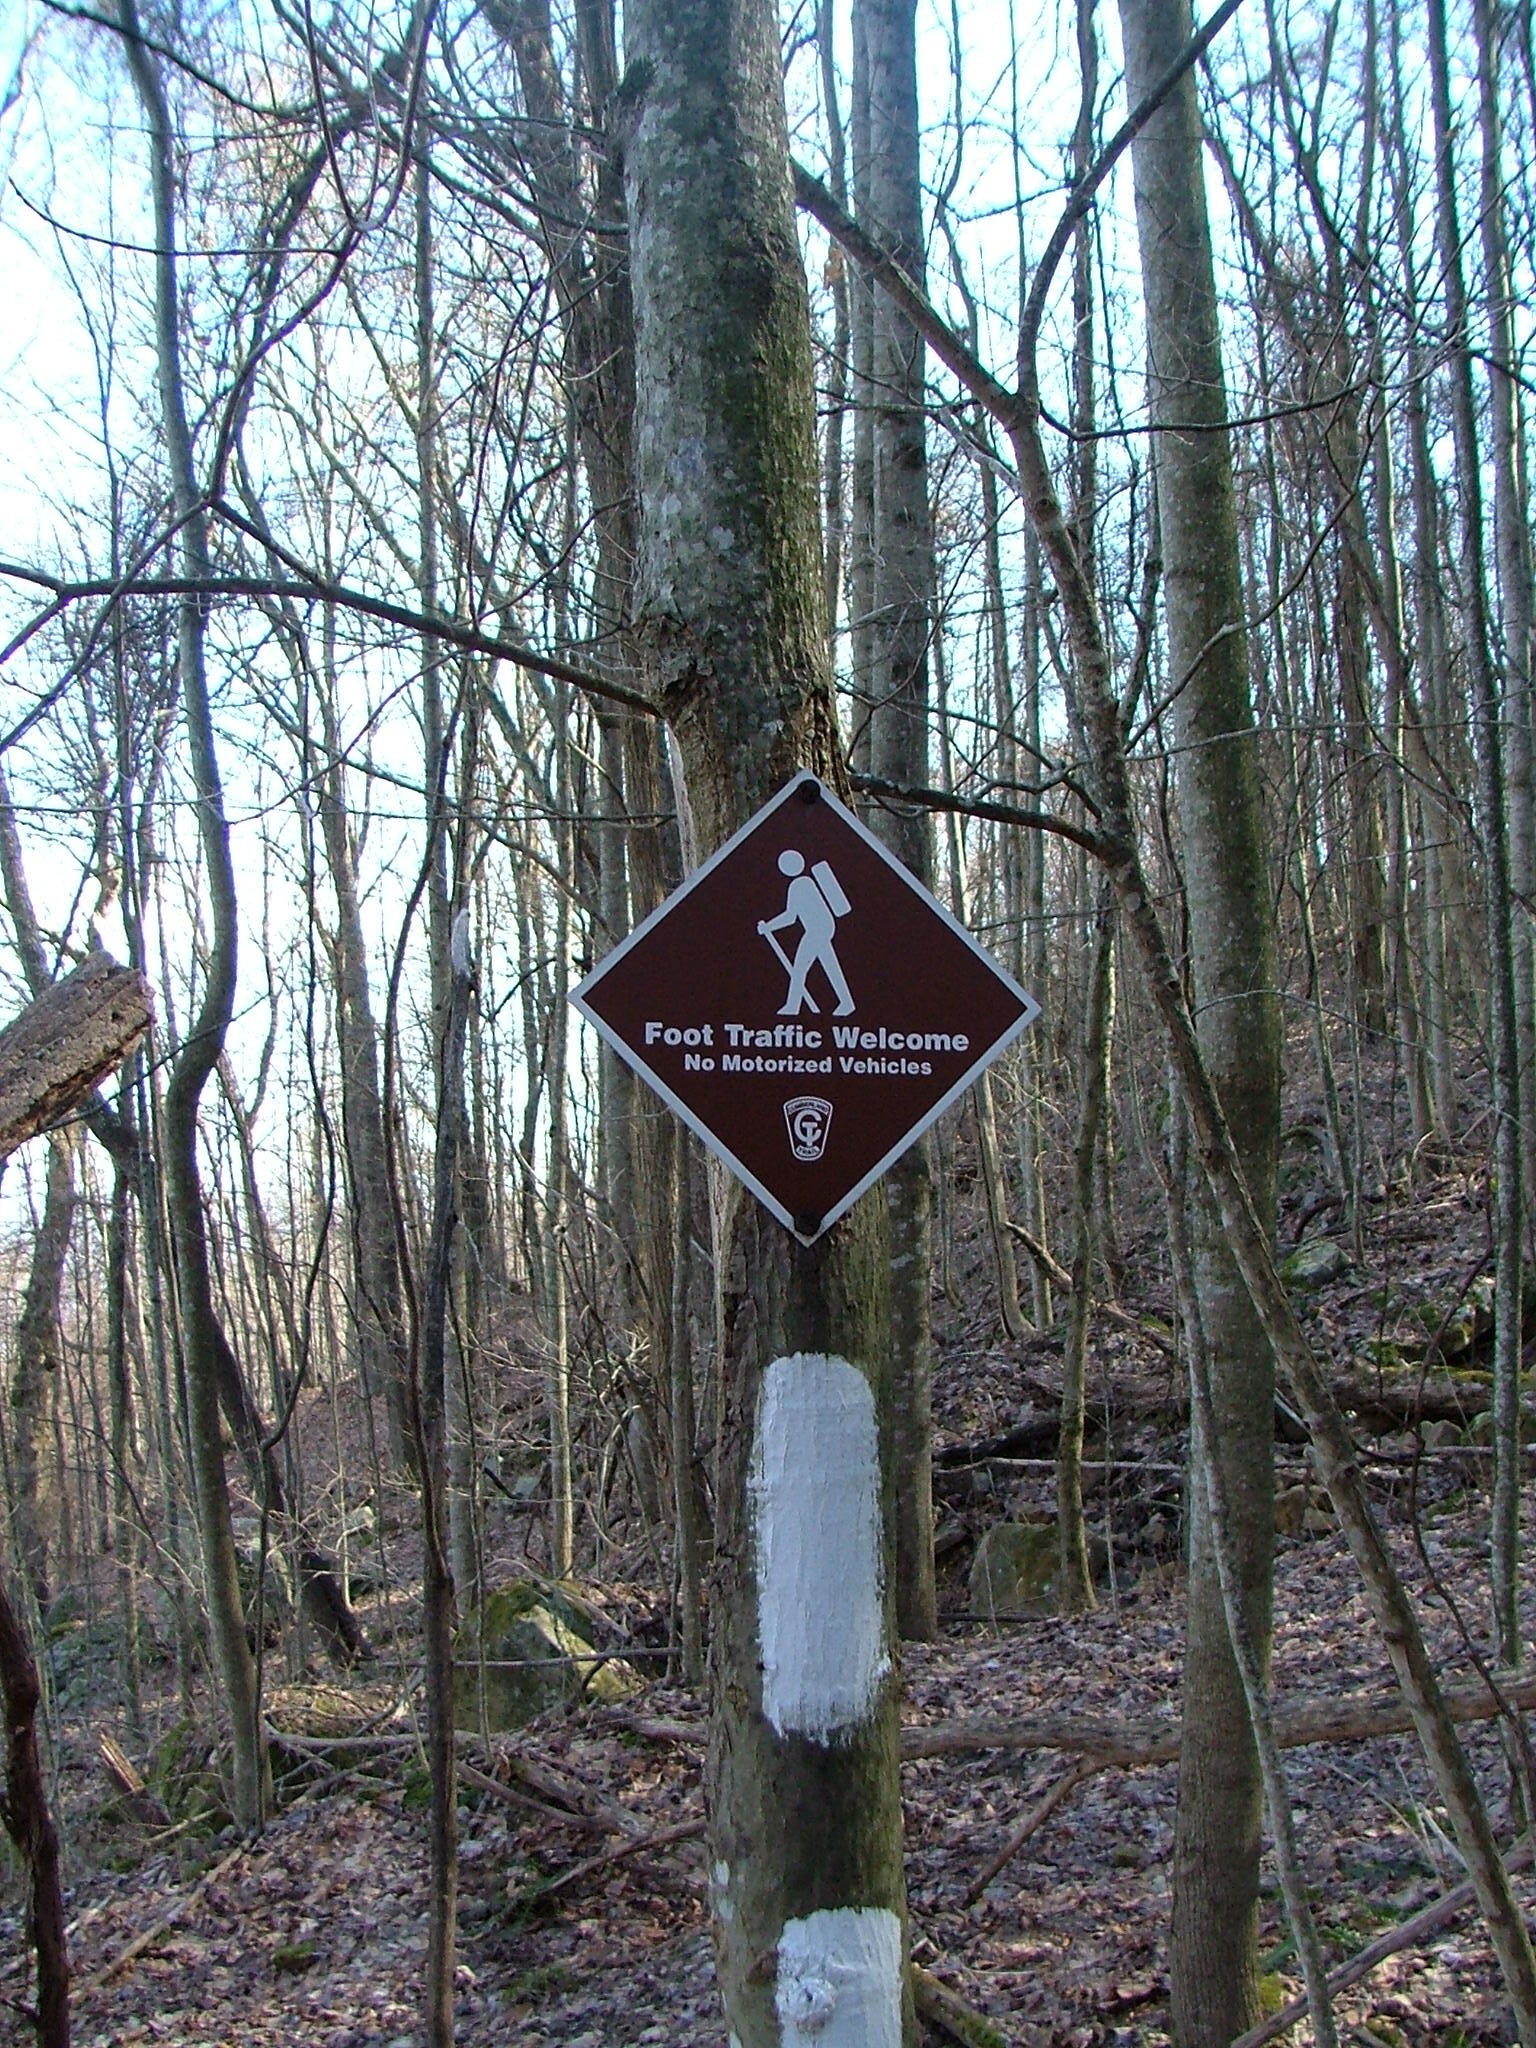 Cumberland Trail